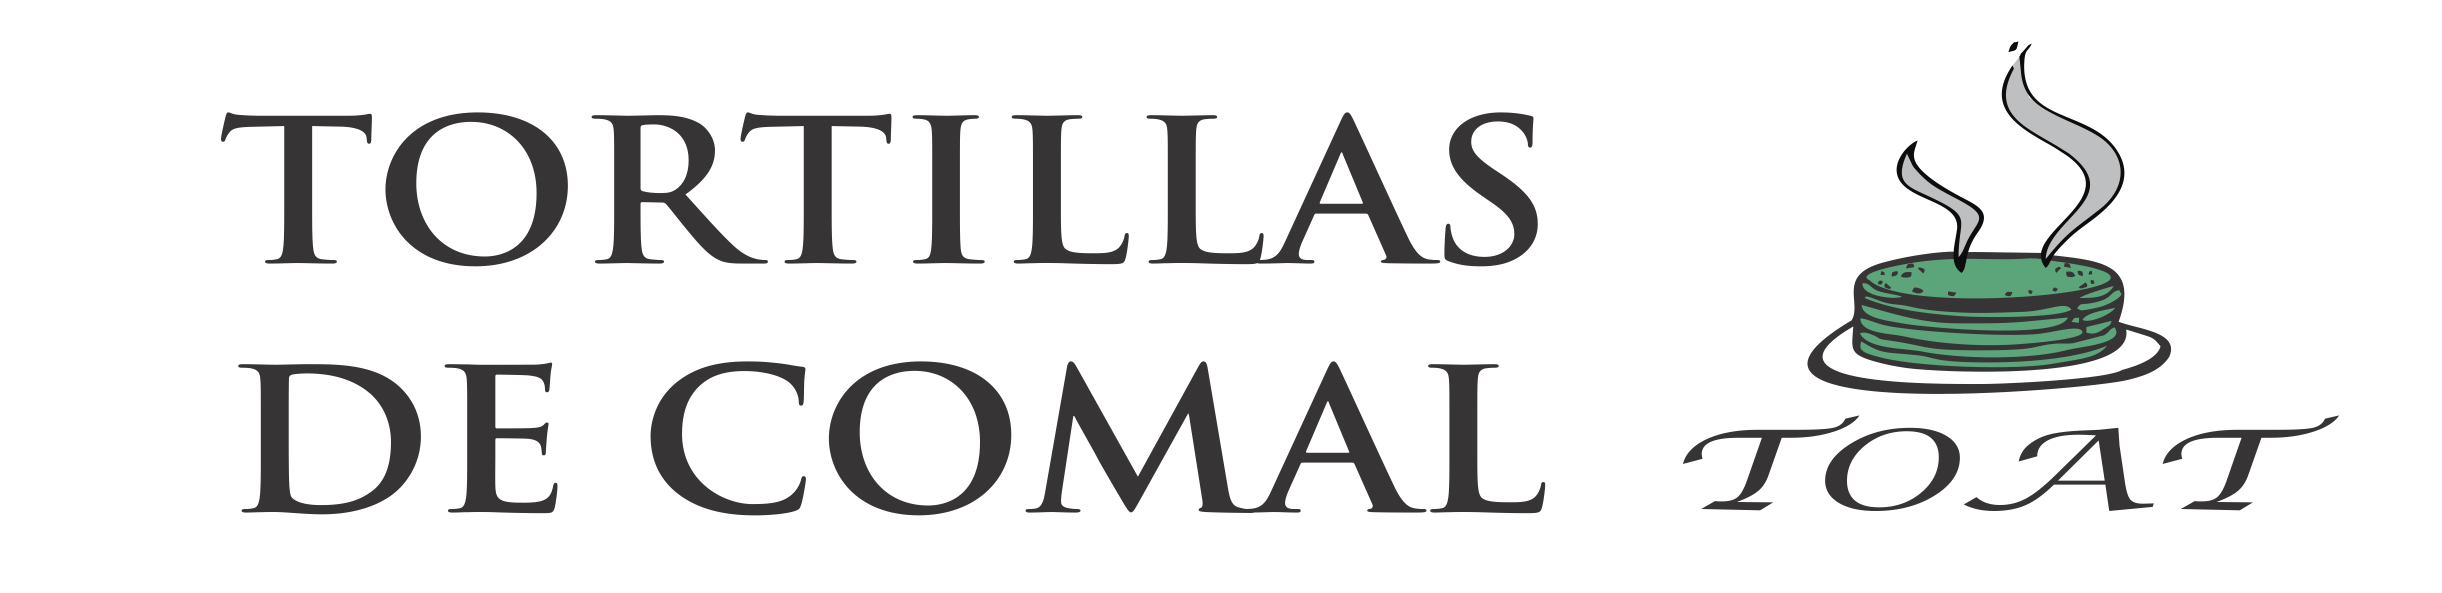 TORTILLAS DE COMAL TOAT